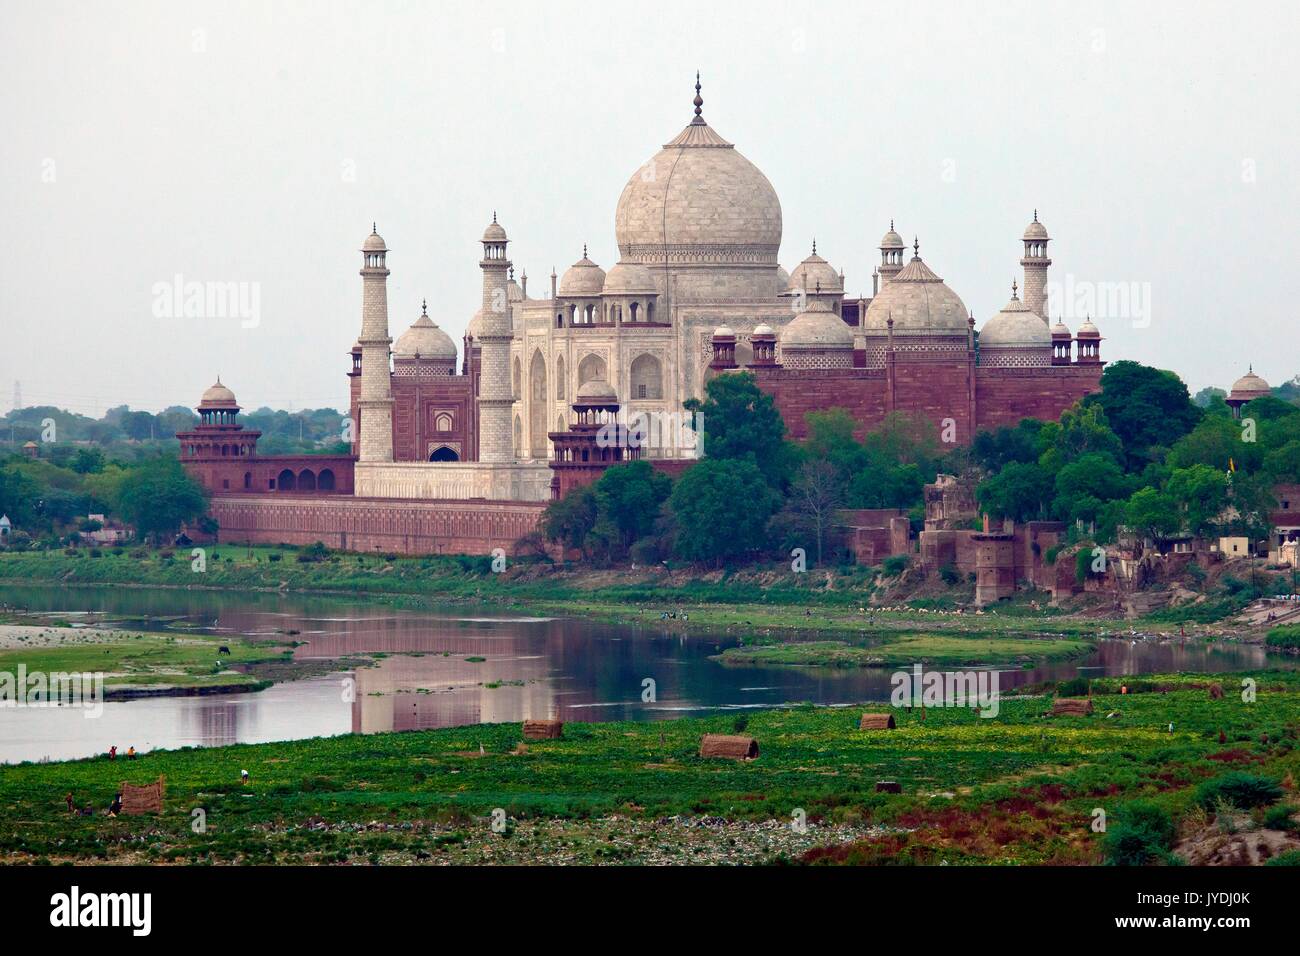 Le Taj Mahal, joyau de l'art musulman en Inde et l'un des chefs-d'œuvre universellement admirés du patrimoine dans le monde, et de la rivière Yamuna, Agra Indi Banque D'Images